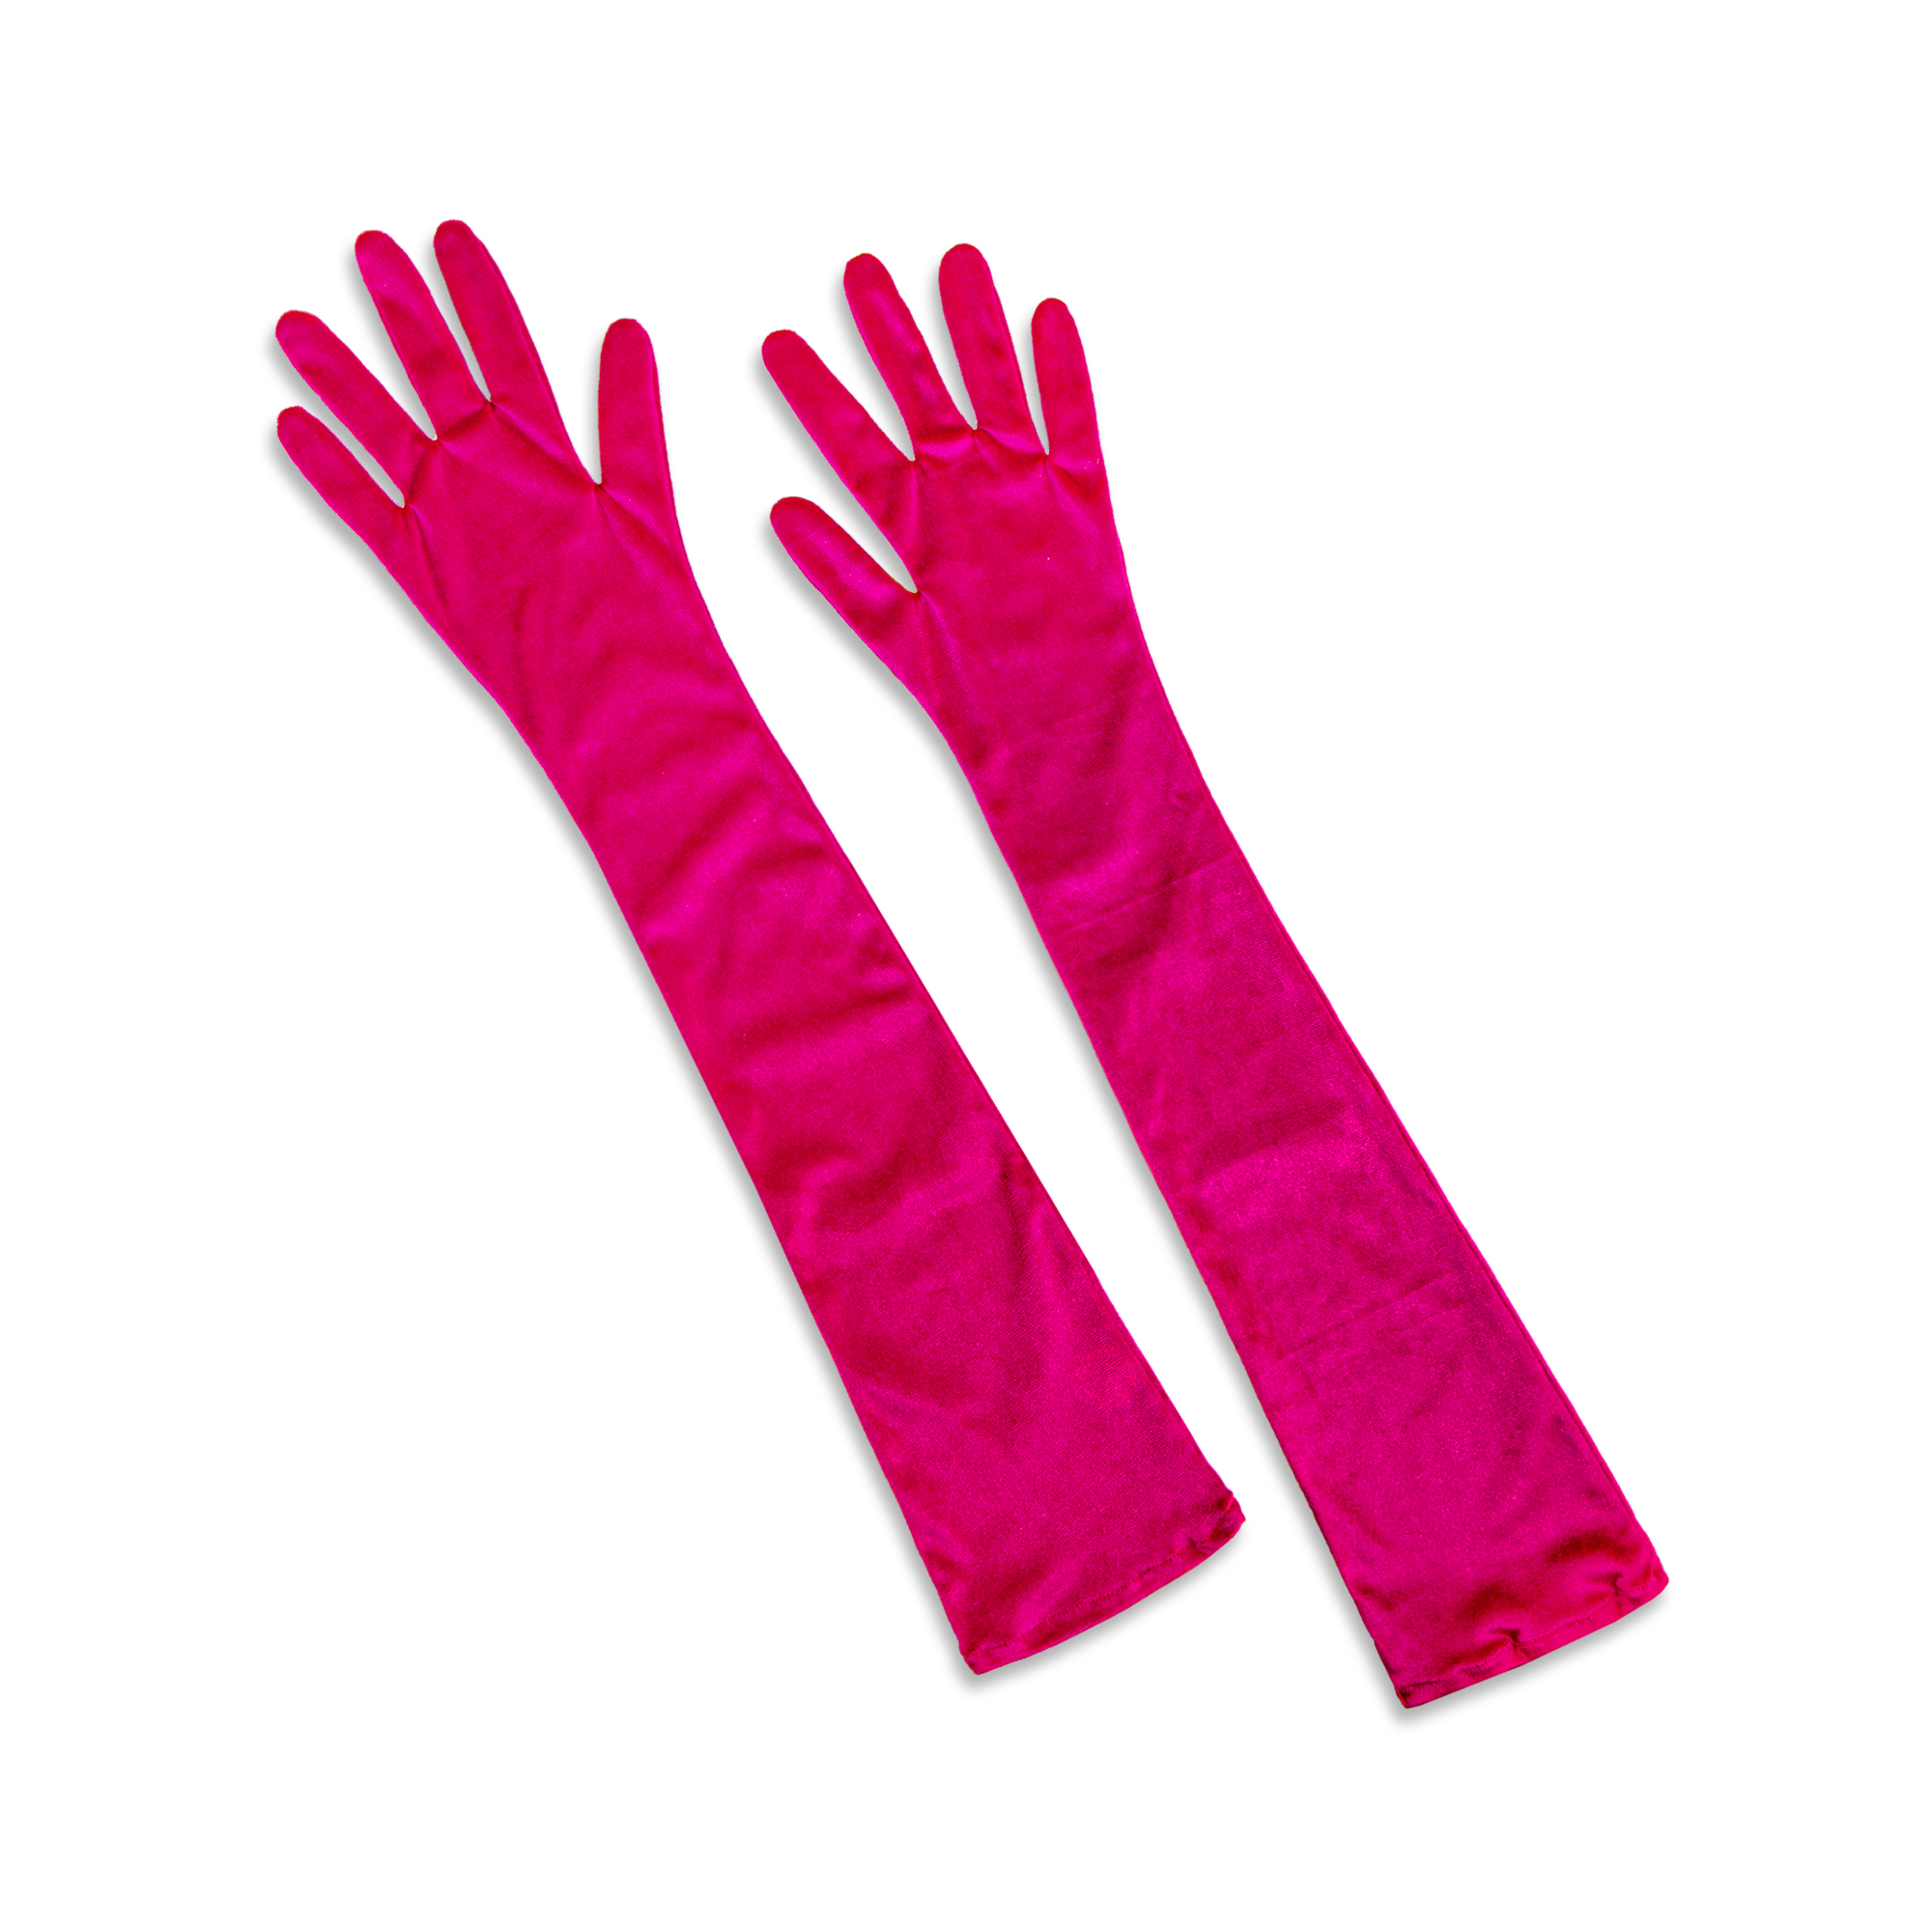 دستکش زنانه تادو طرح مخمل مدل 16-300